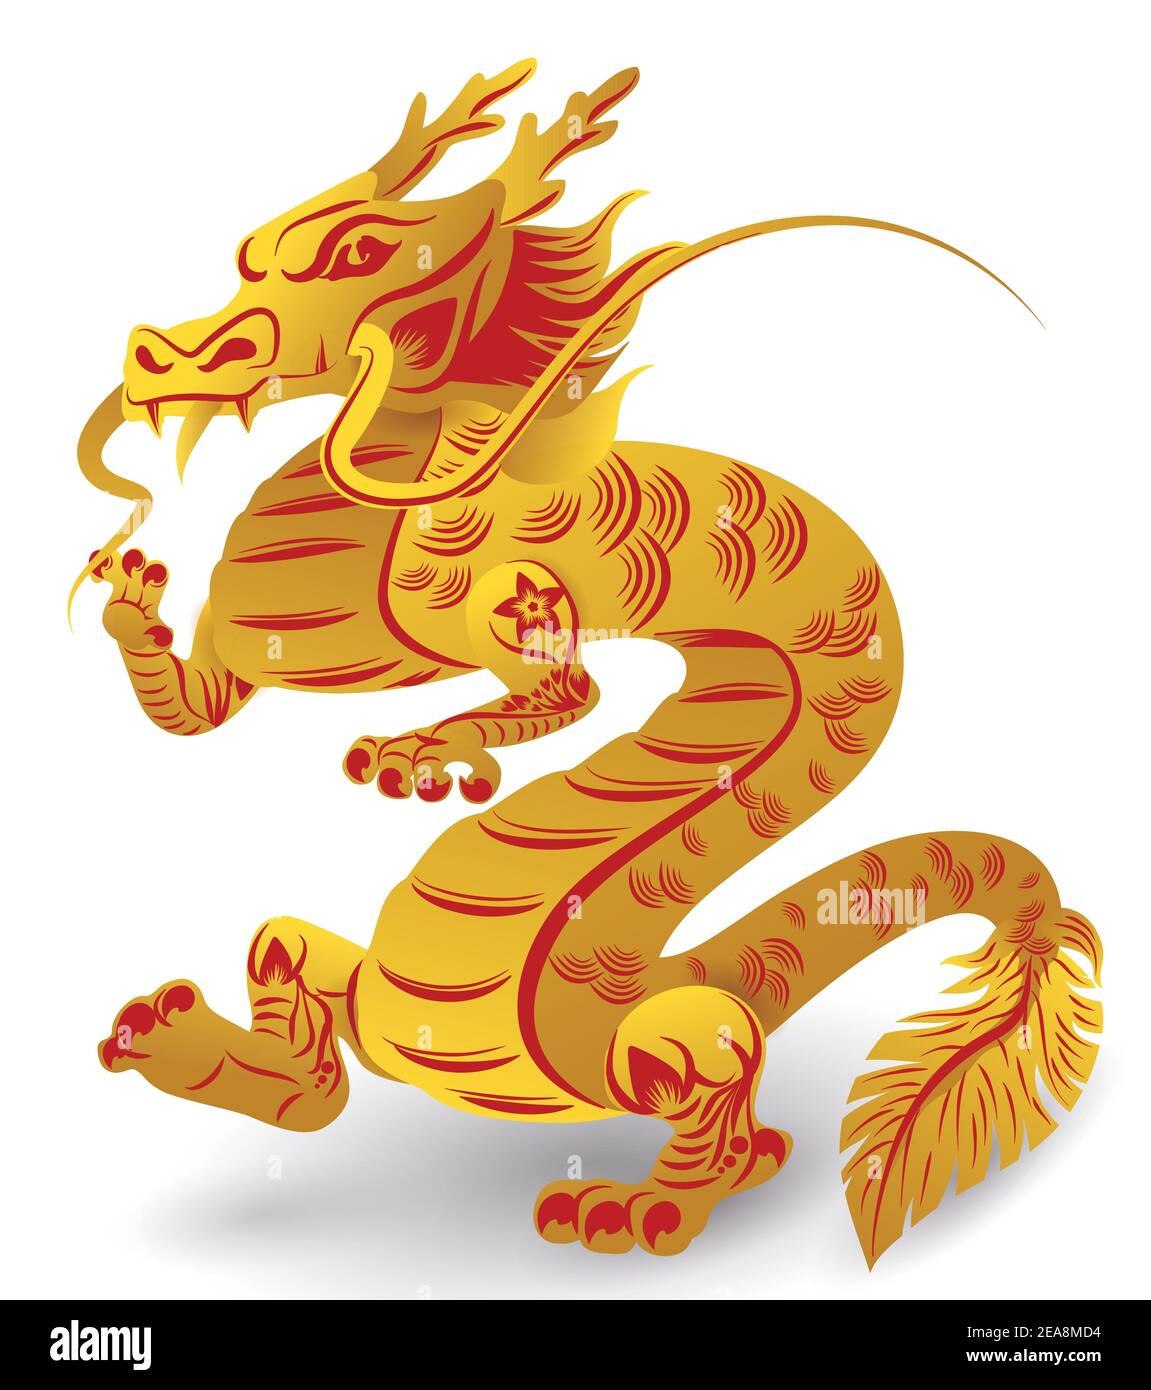 Impresionante dragón de Zodiac chino con largos susurros, garras, cola emplumada y de pie en sus patas traseras, decorado con flores, líneas, dorado y. Ilustración del Vector